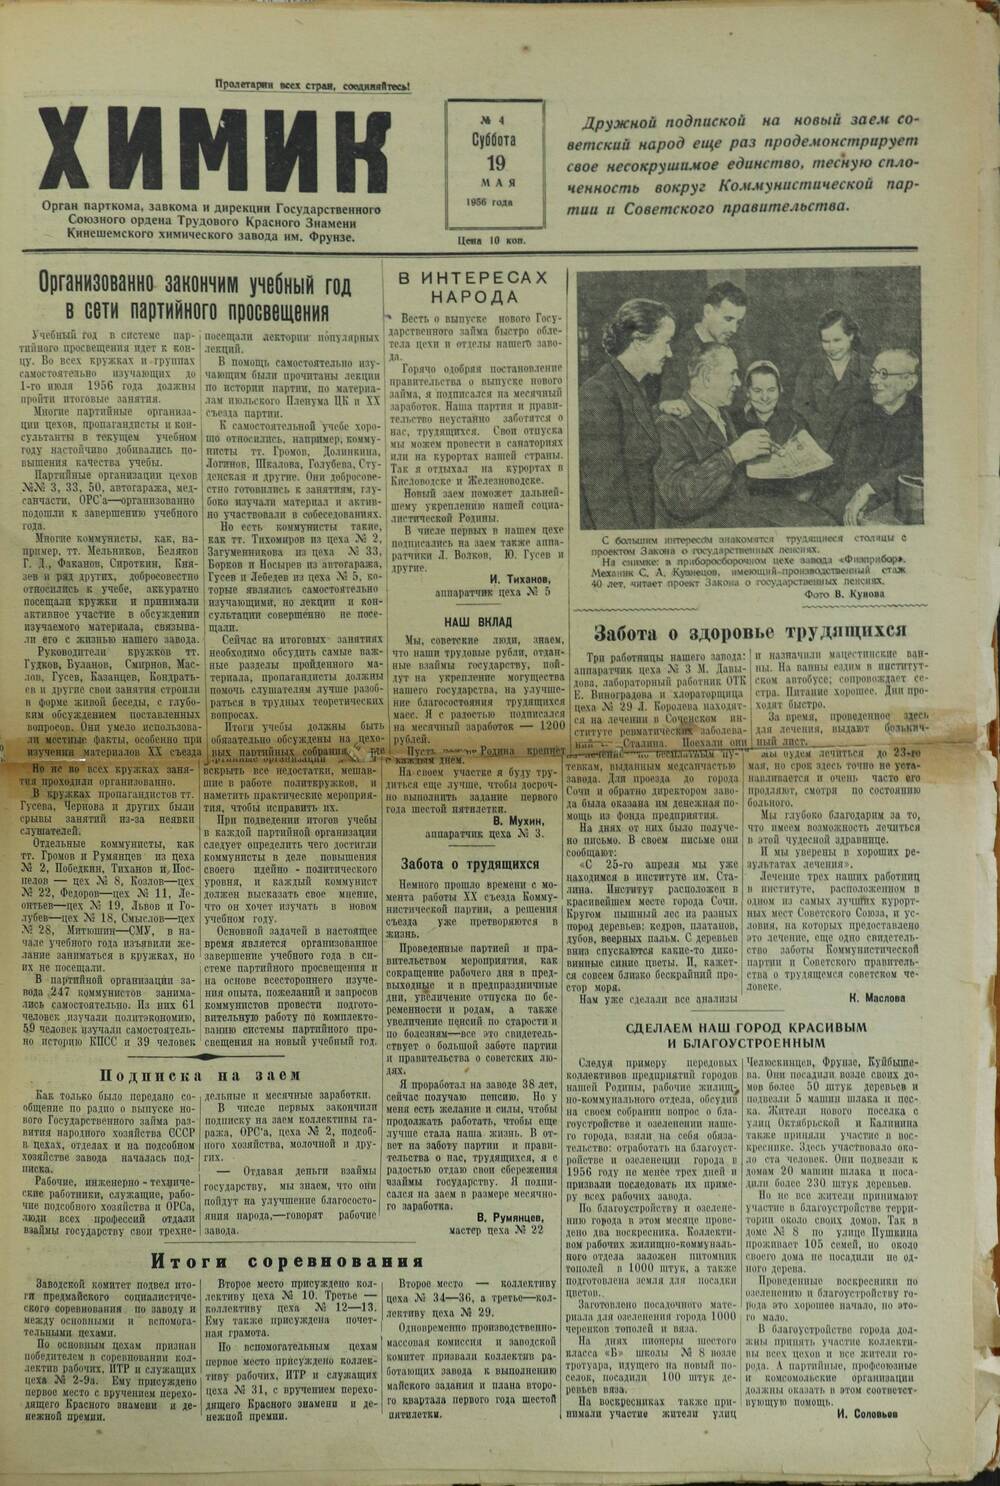 Газета «Химик» № 4 от 19 мая 1956 года.